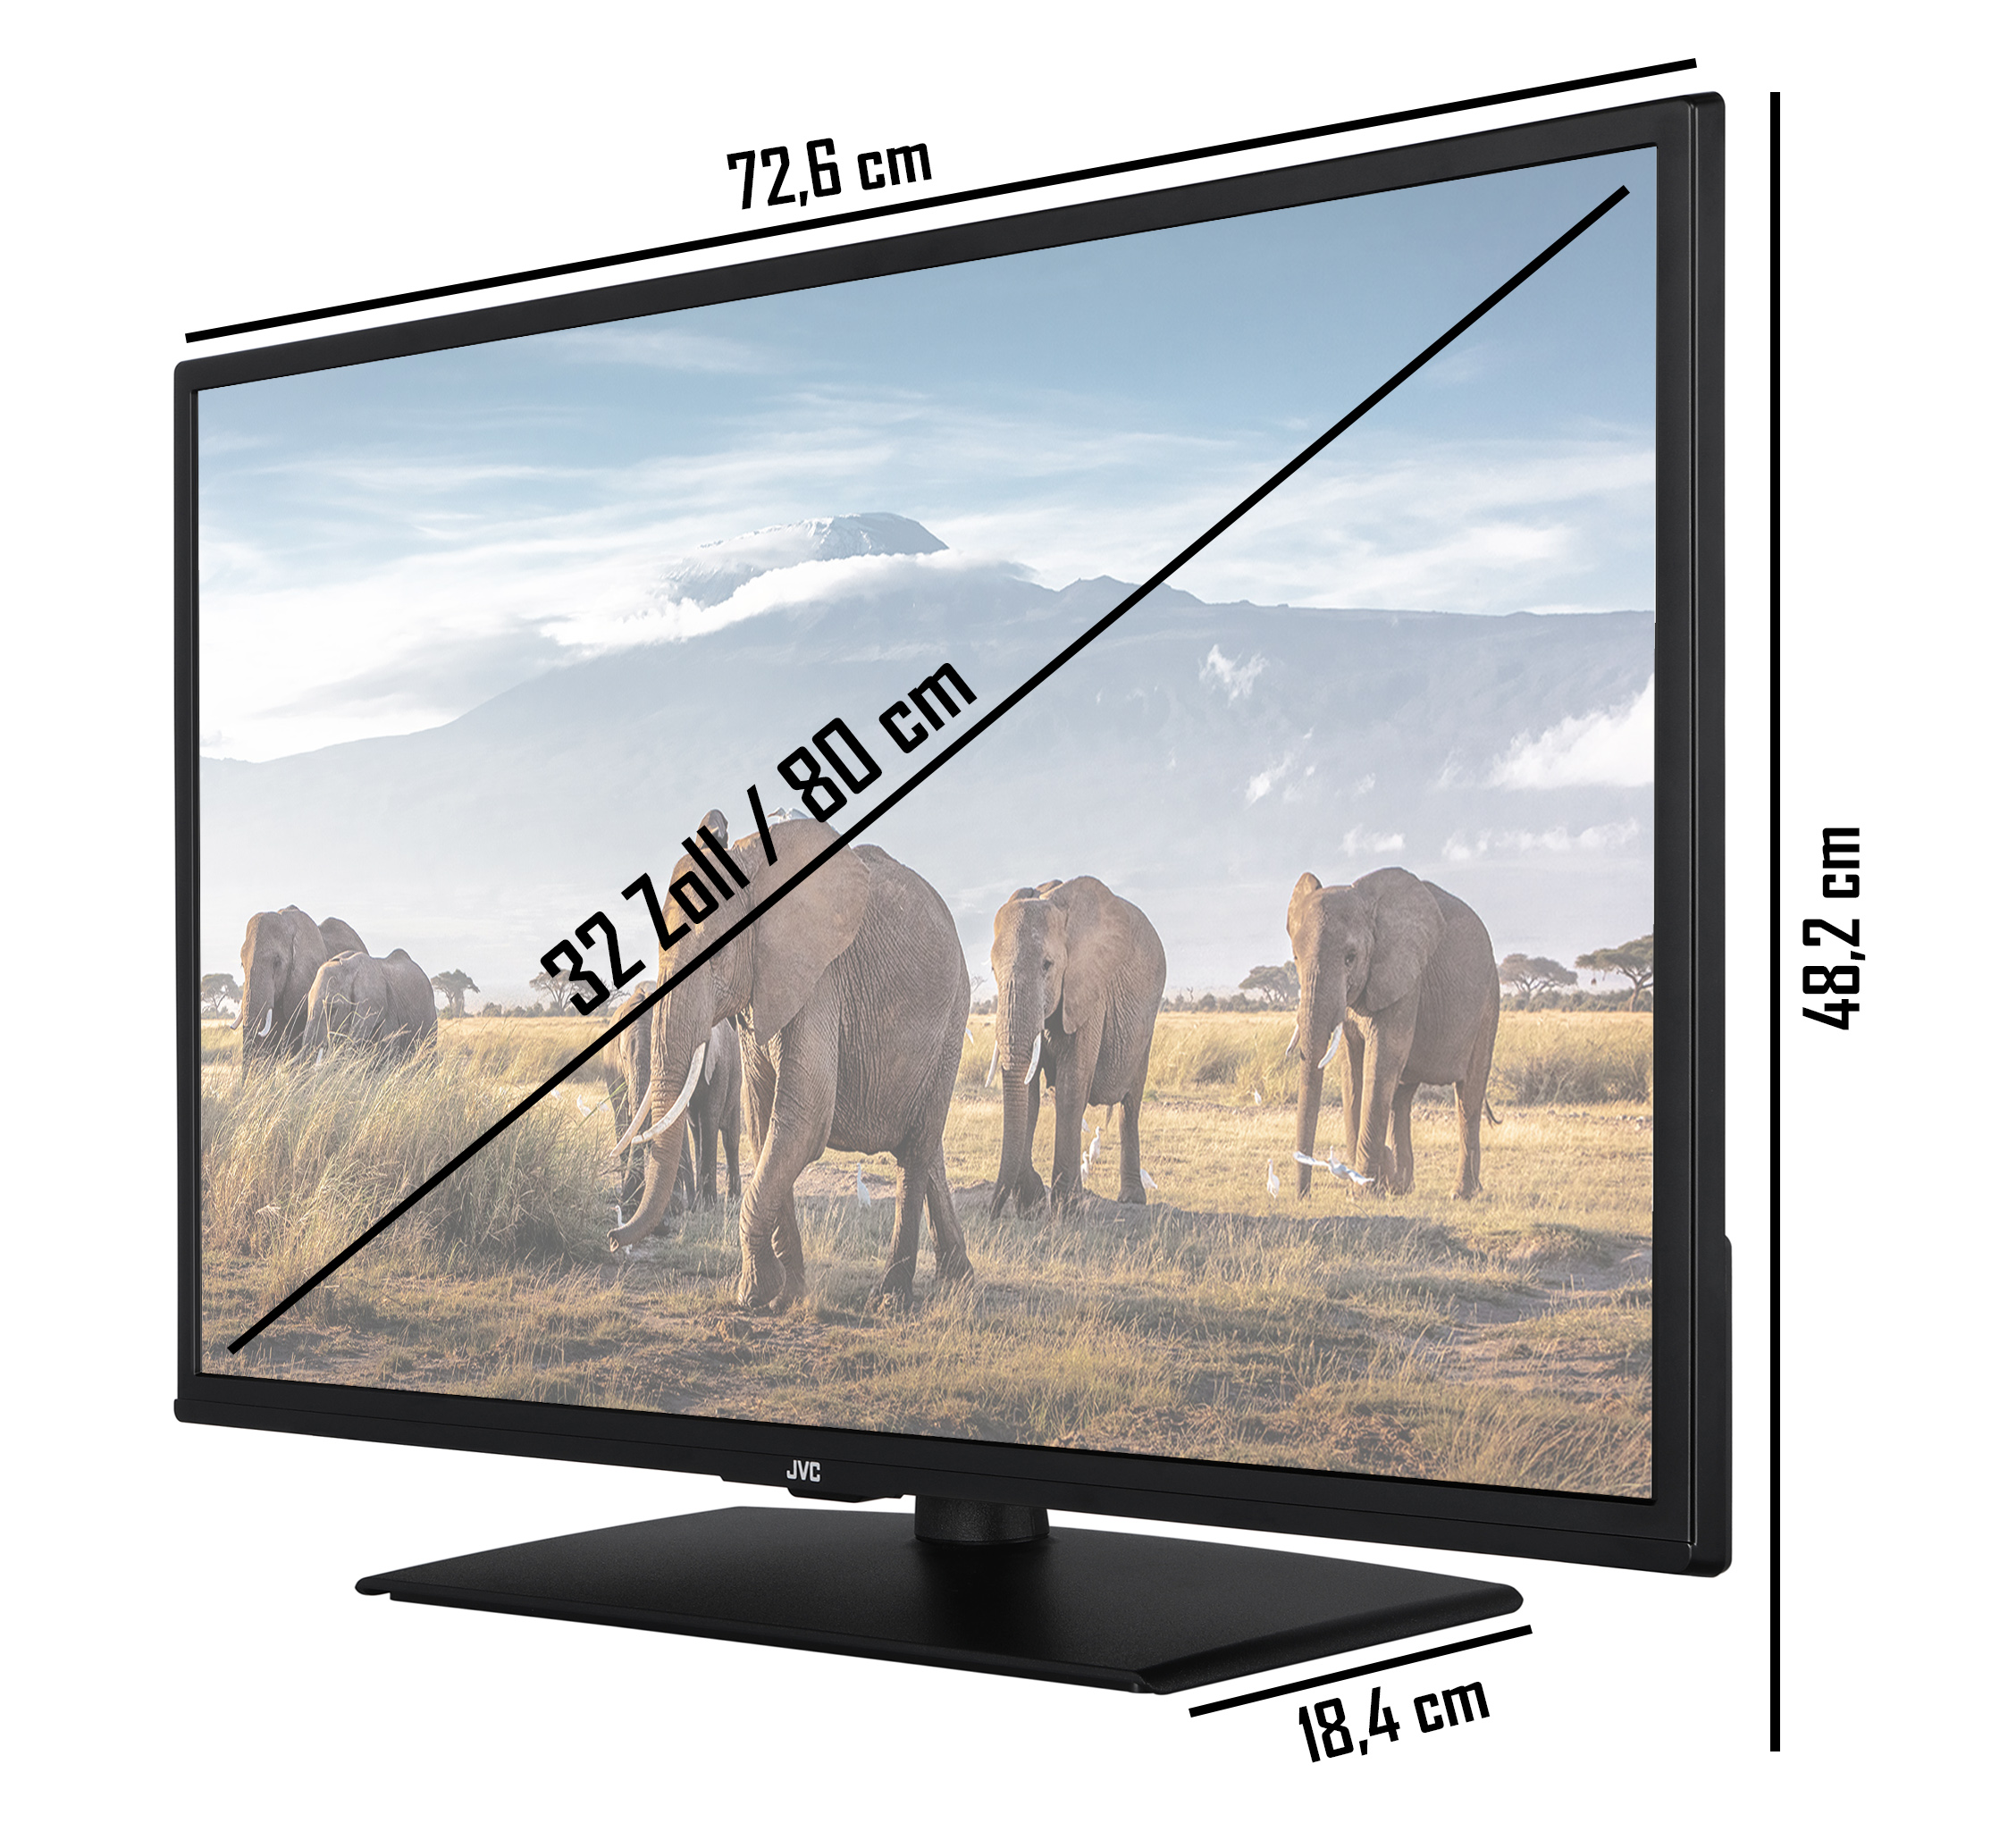 JVC LT-32VF5158 LED TV) Full-HD, (Flat, SMART TV 80 32 / cm, Zoll